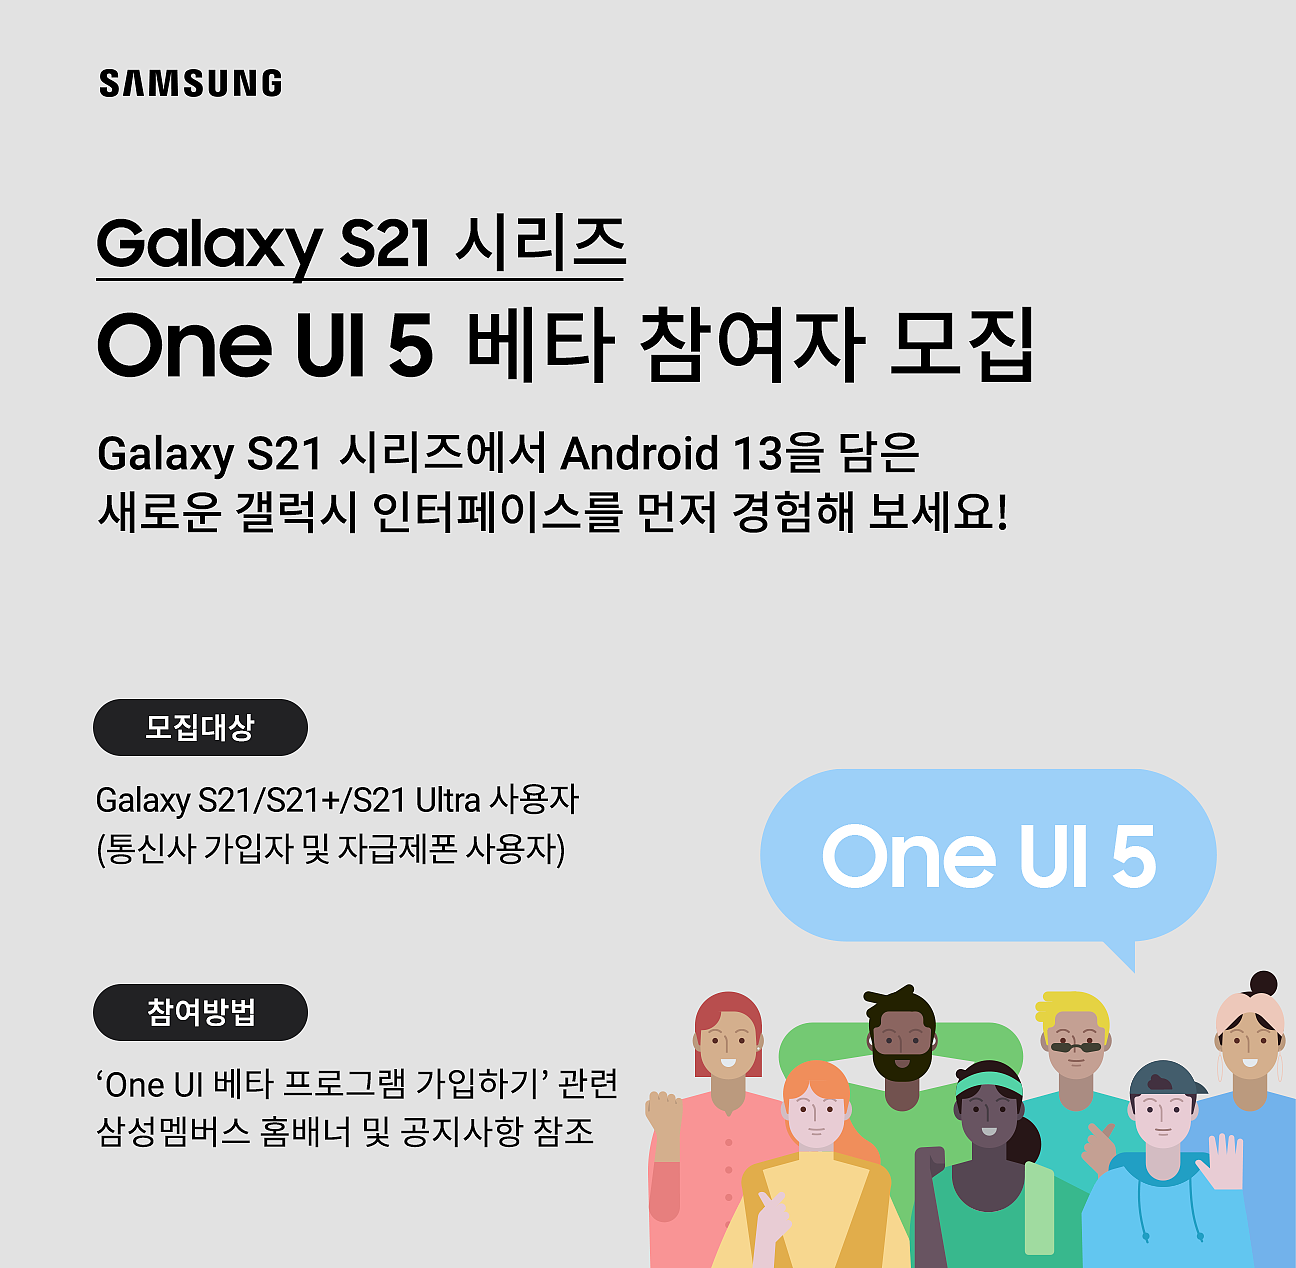 三星 Galaxy S21 / Ultra 系列韩国 / 英国版开测安卓 13 / One UI 5.0 Beta（附更新内容） - 1